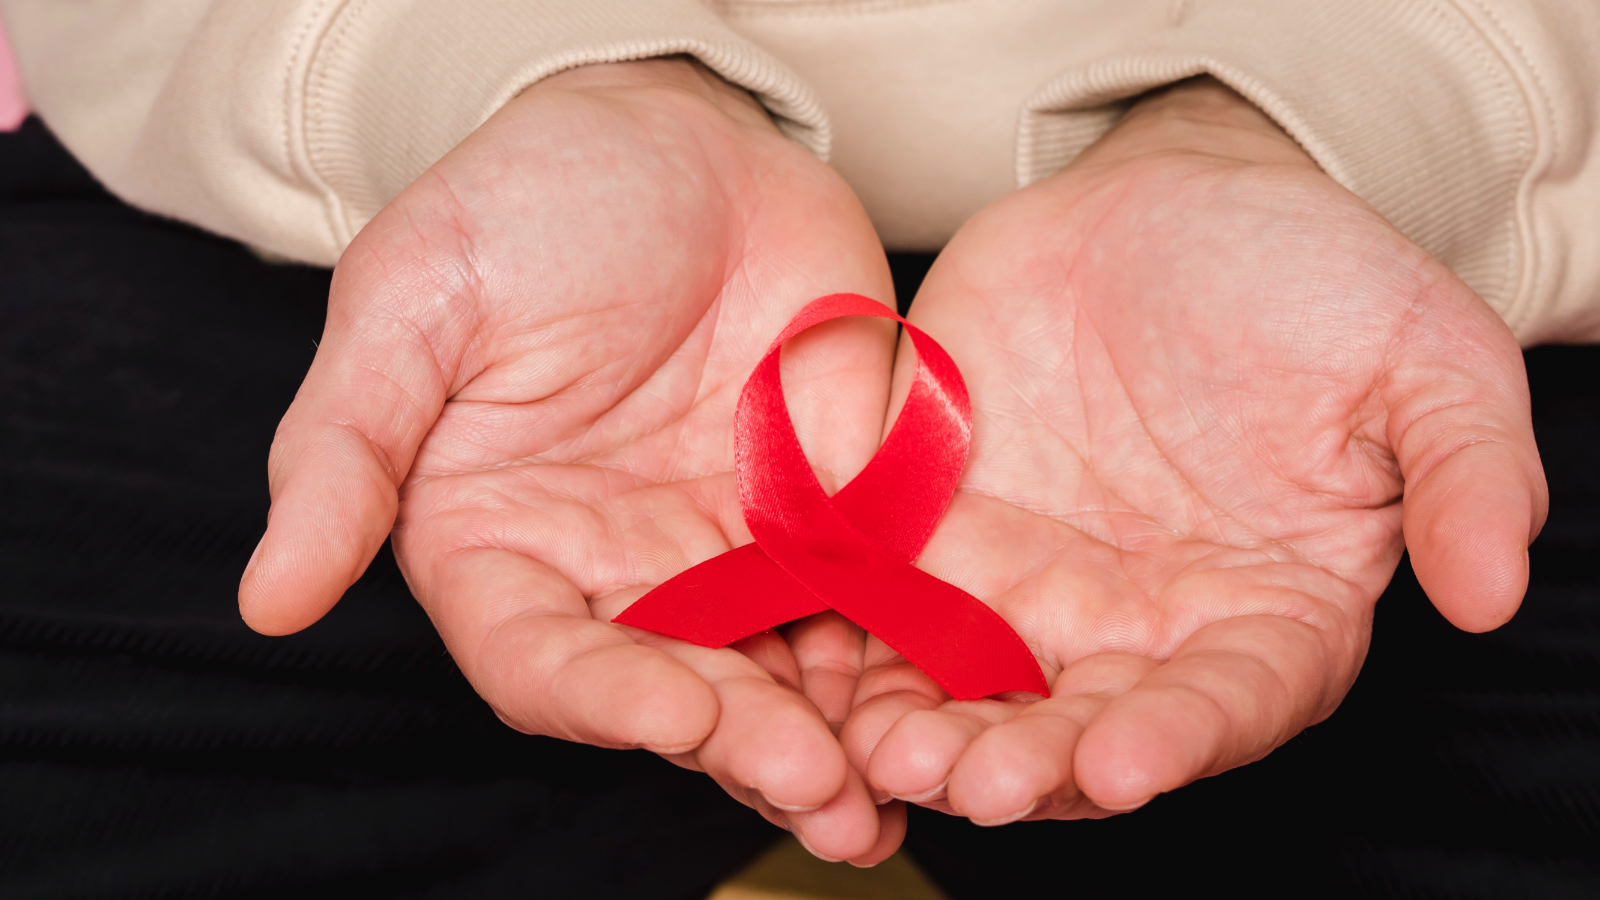 Zum Welt-Aids-Tag am 1. Dezember: Ungleichheiten beenden!